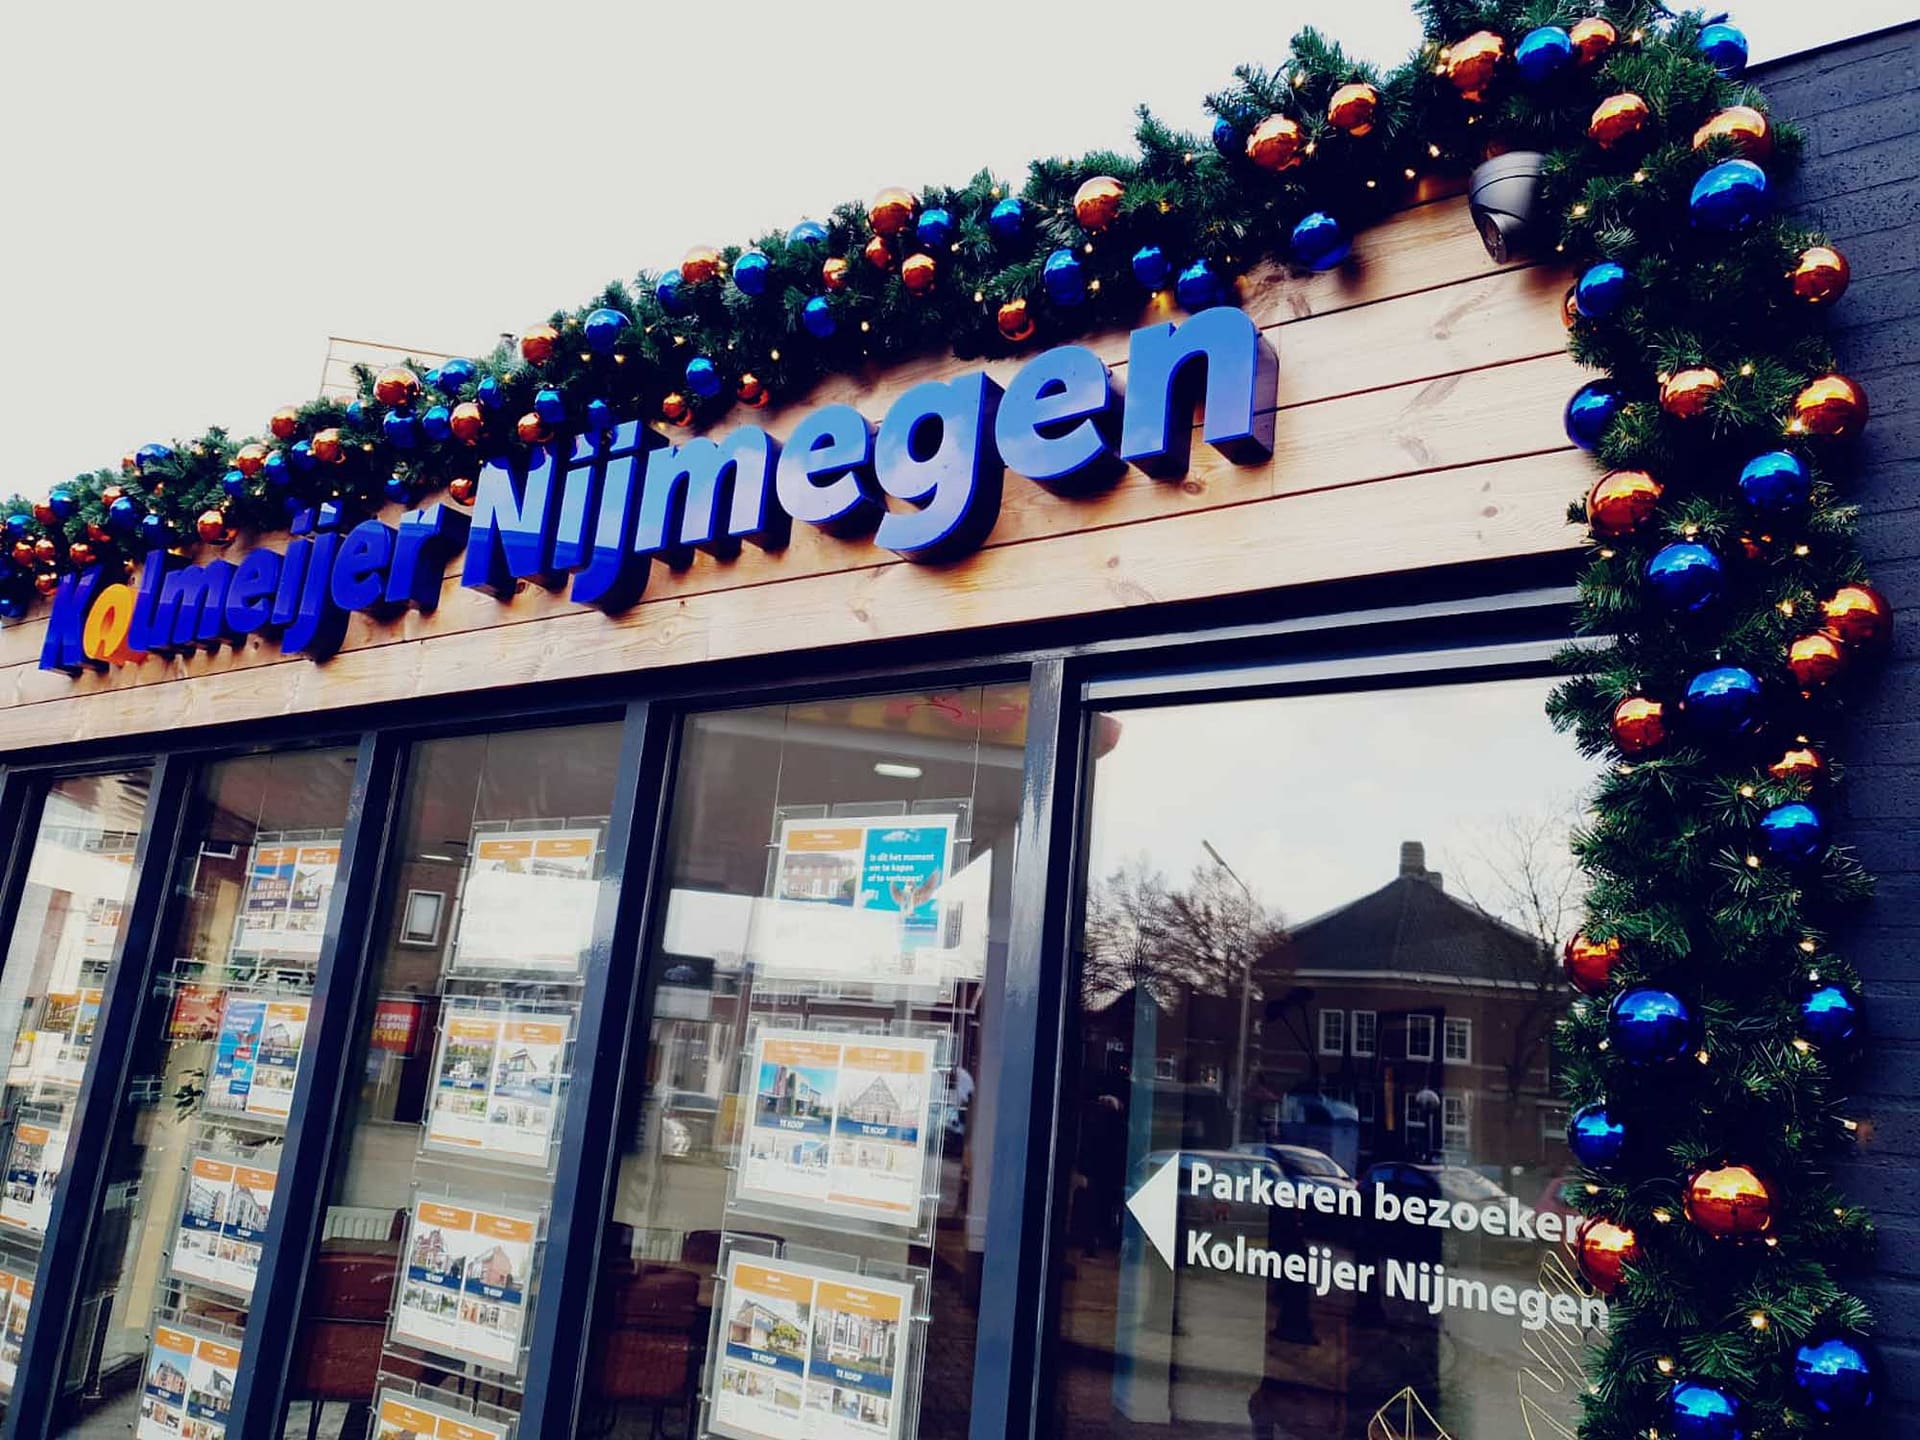 Kerststyling in Nijmegen door EventOntwerpers